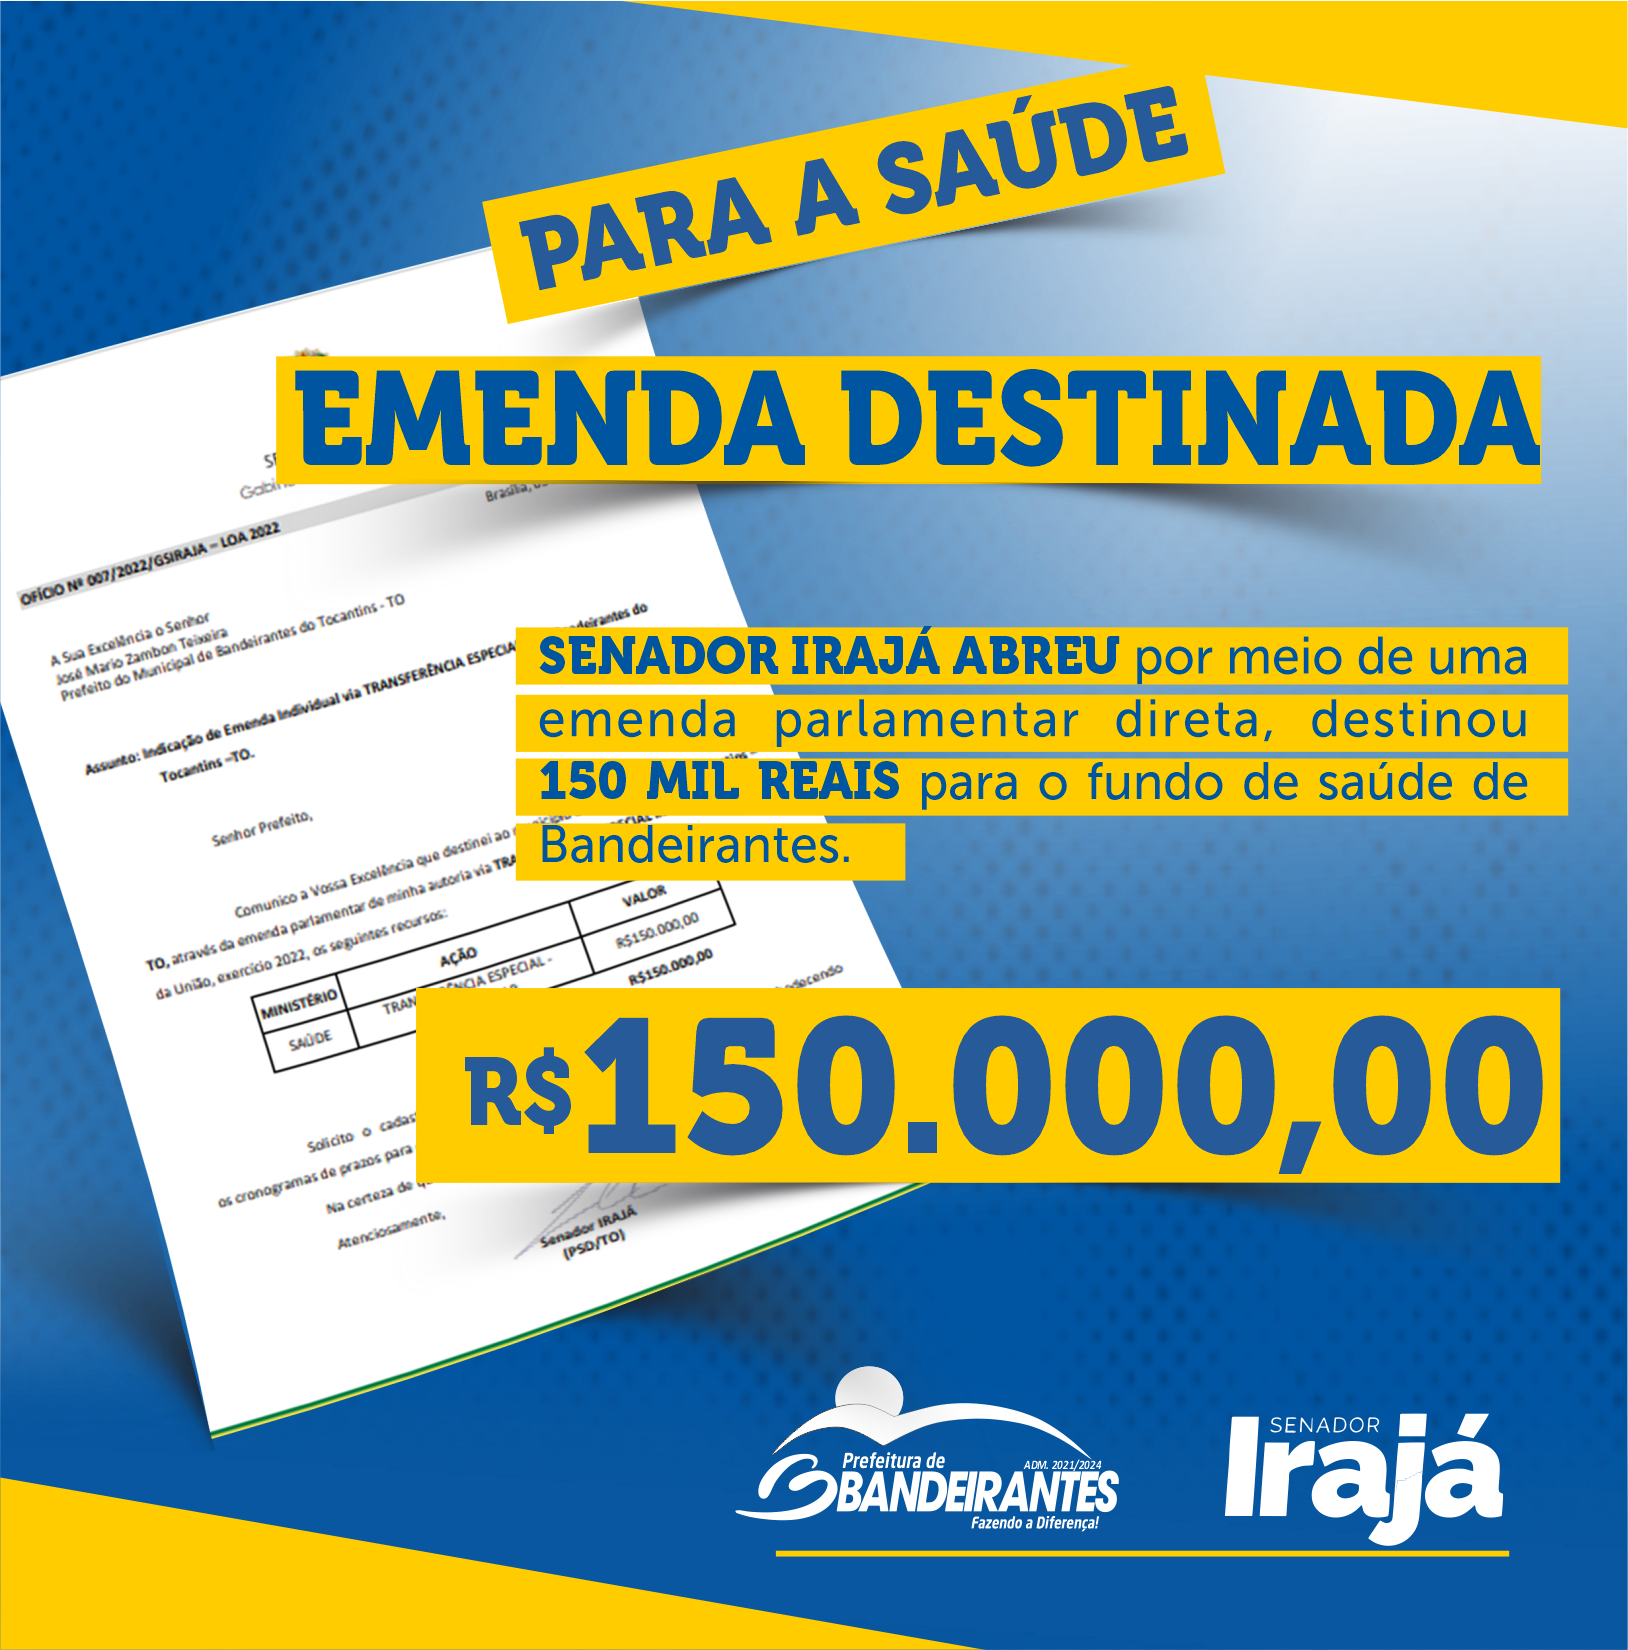 Senador Irajá Abreu por meio de uma 
emenda parlamentar direta, destinou 
150 MIL REAIS para o fundo de saúde de 
Bandeirantes.